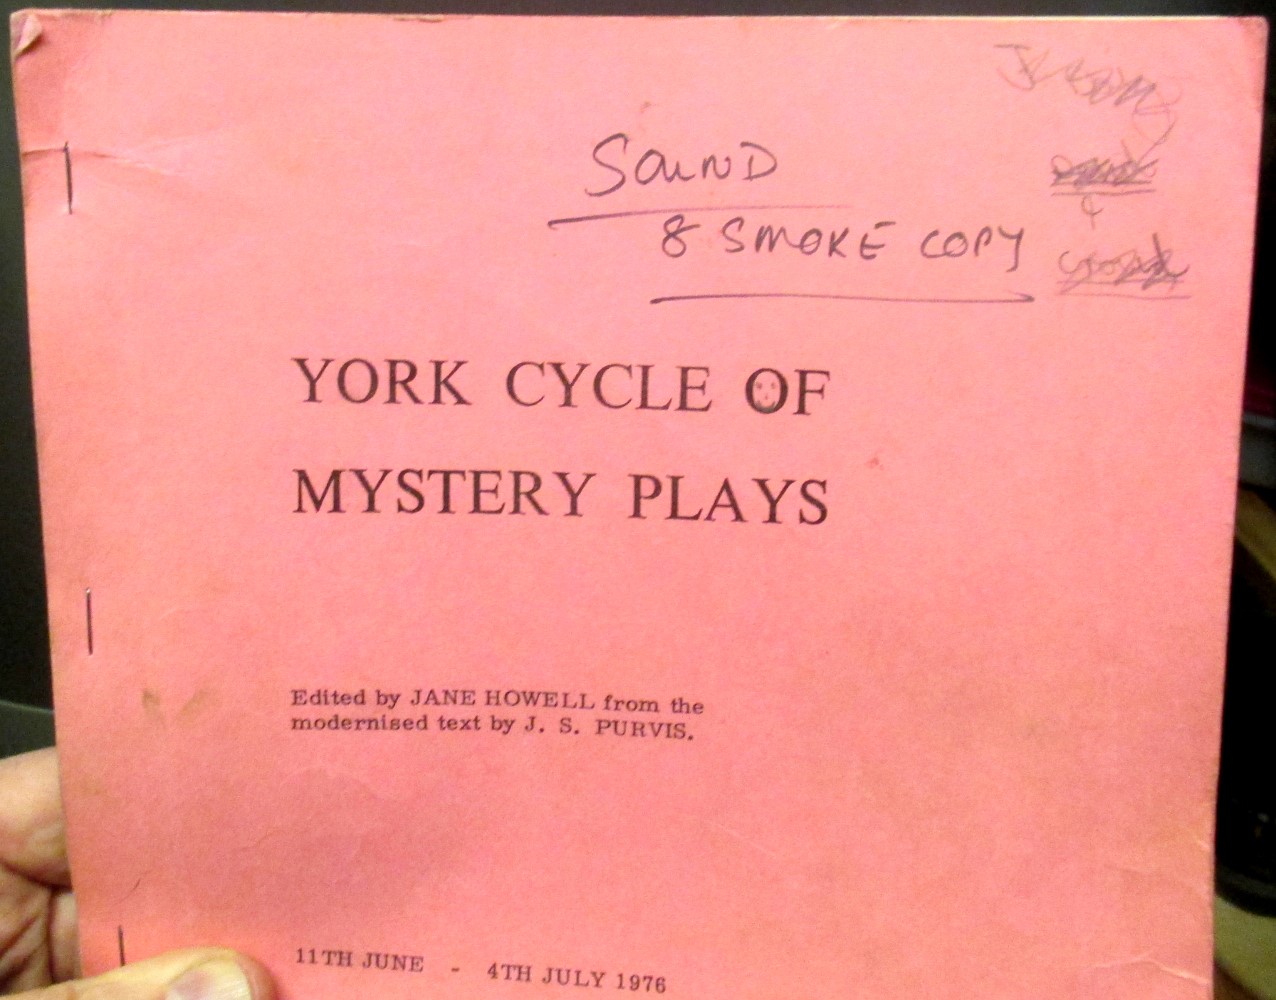 1976 sound script cover